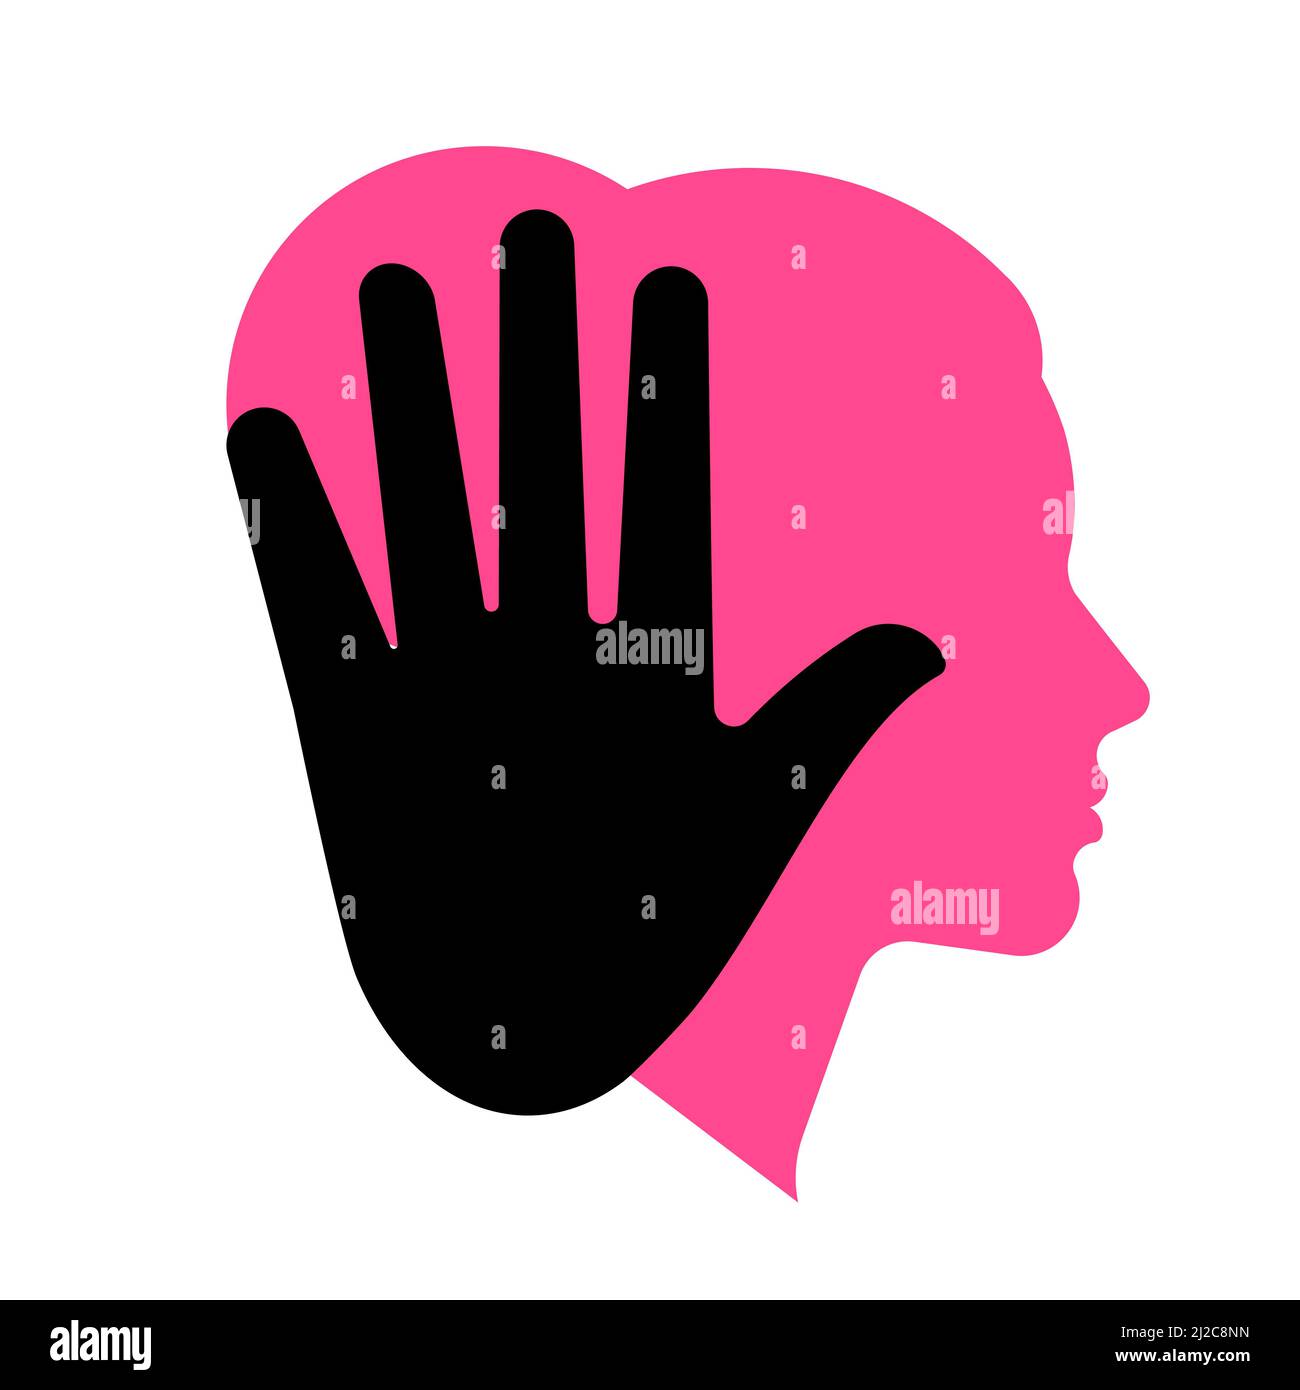 Concept de violence domestique - silhouette de la tête et de la main d'une femme en geste d'arrêt. Illustration vectorielle sur fond blanc. Illustration de Vecteur